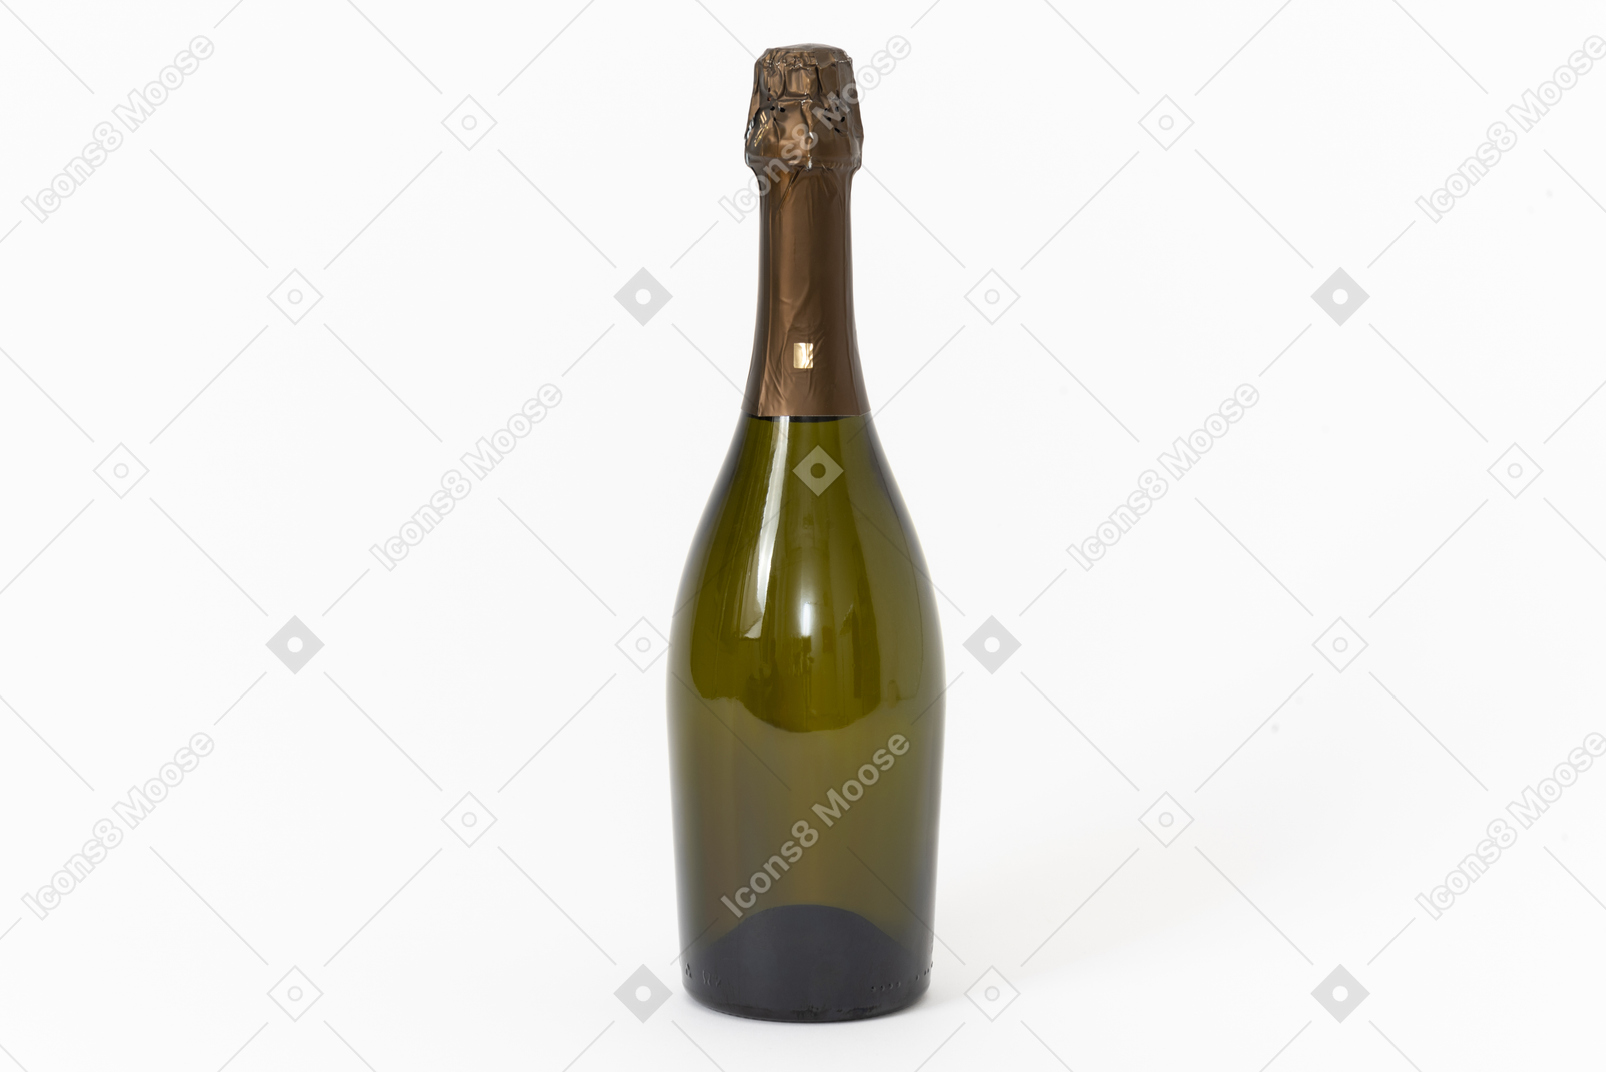 Bottle of sparkling wine